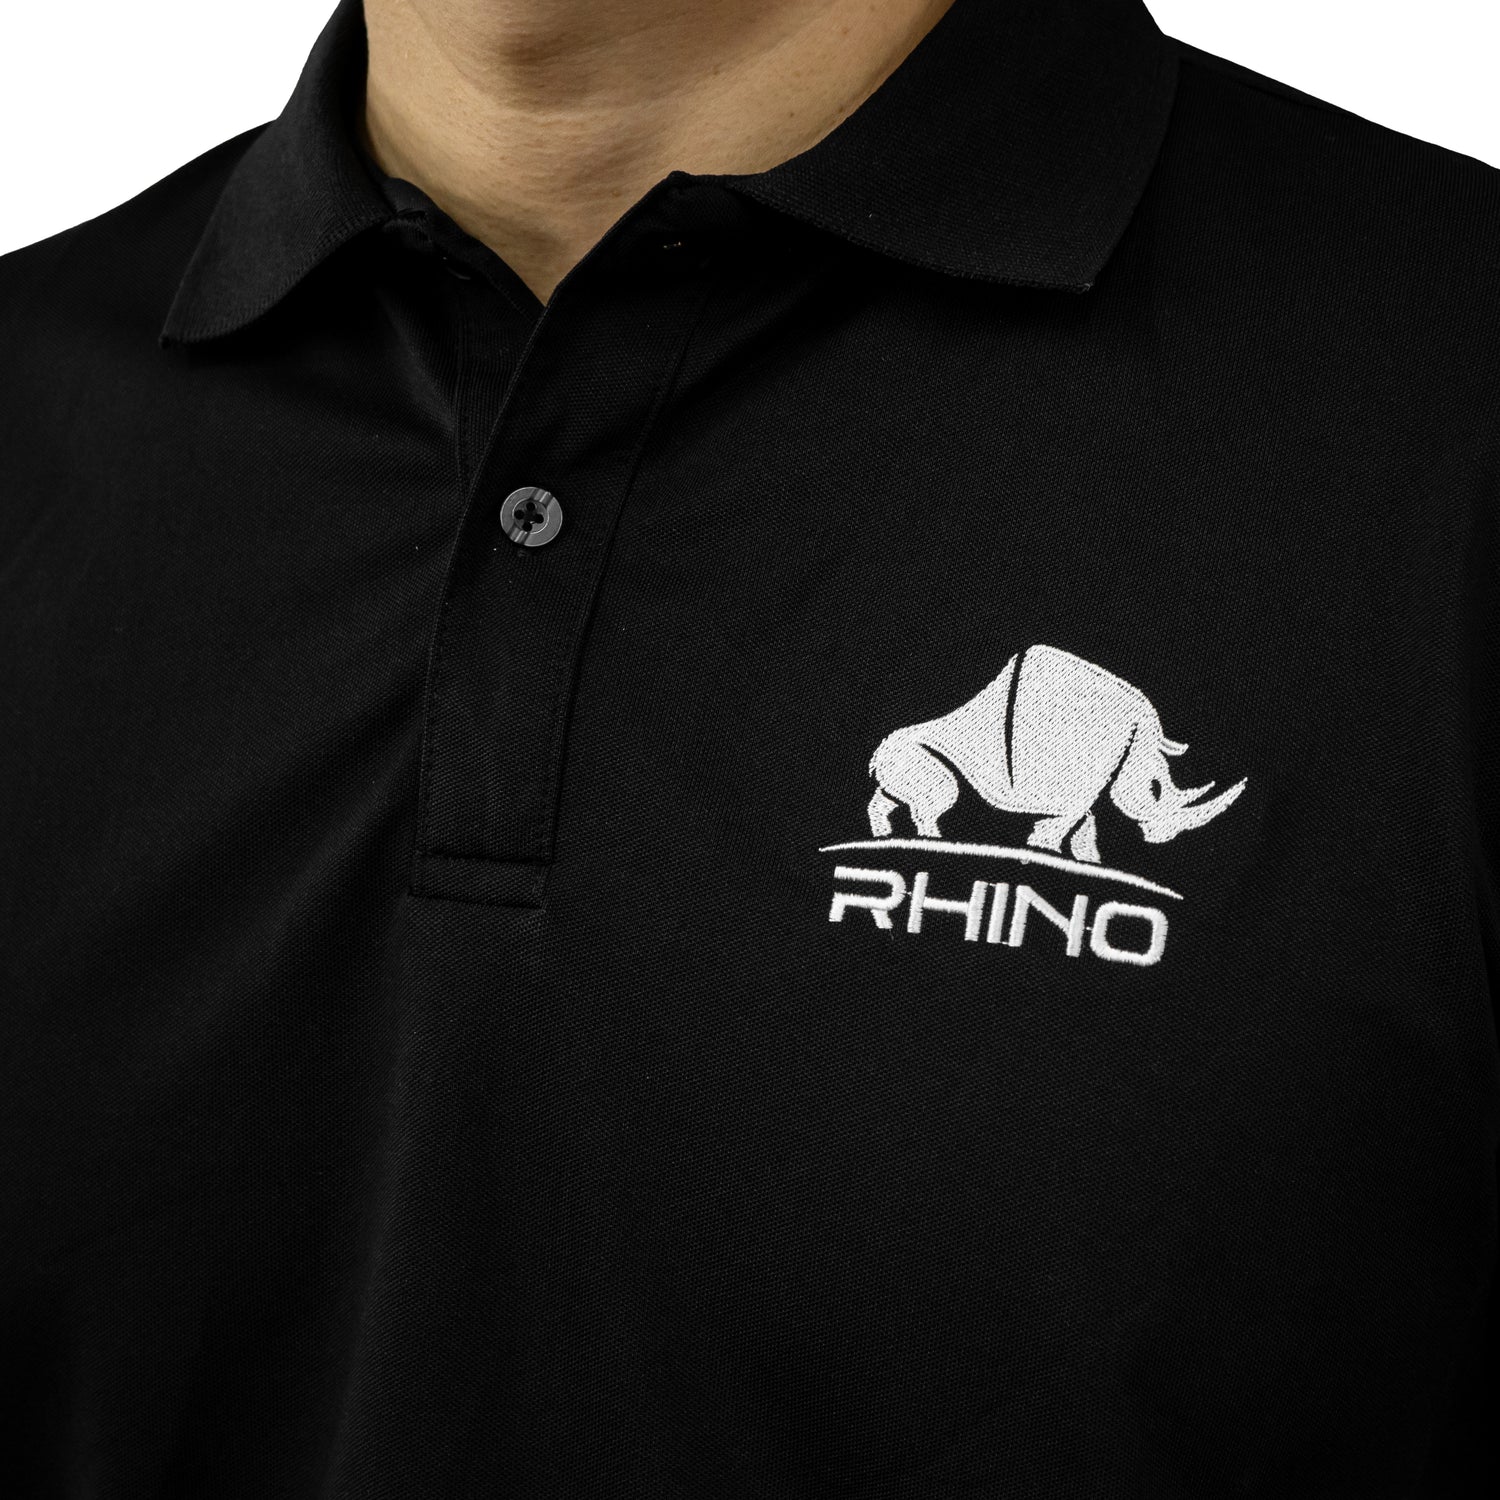 Rhino Polo T-Shirt